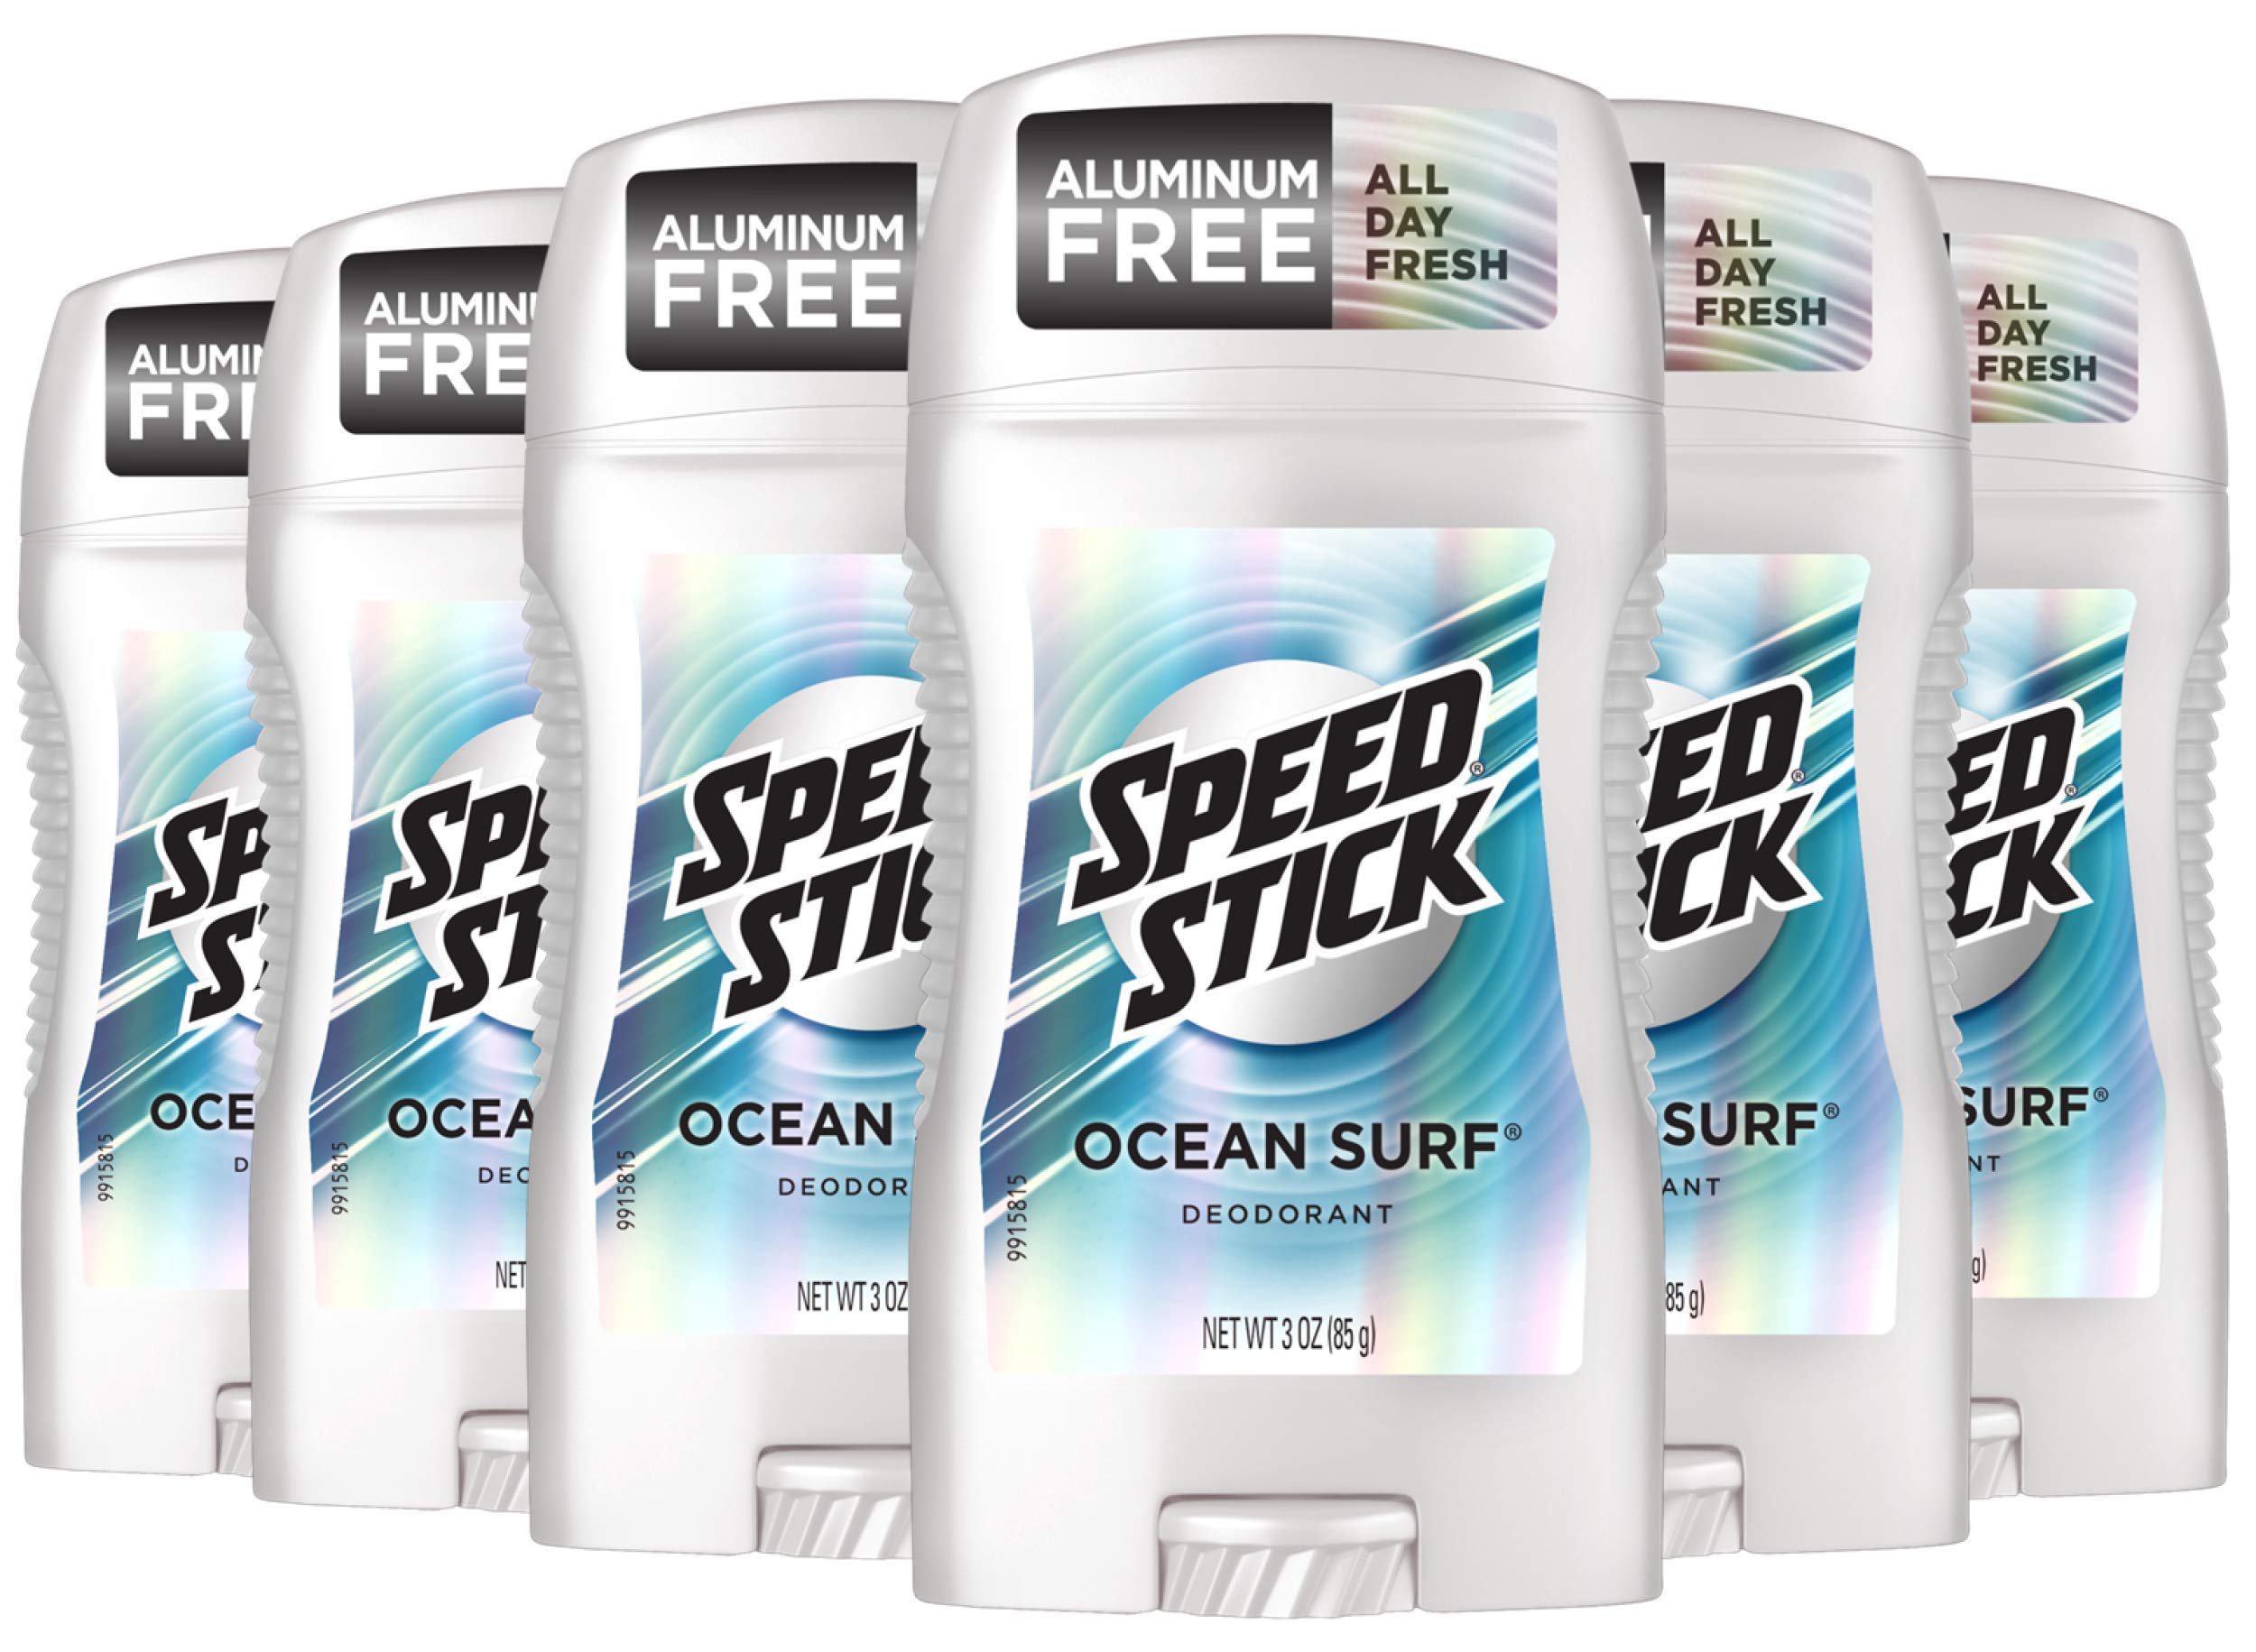 Speed Stick Underarm Deodorant for Men, Aluminum Free, Ocean Surf - 3 Ounce (Pack of 6)